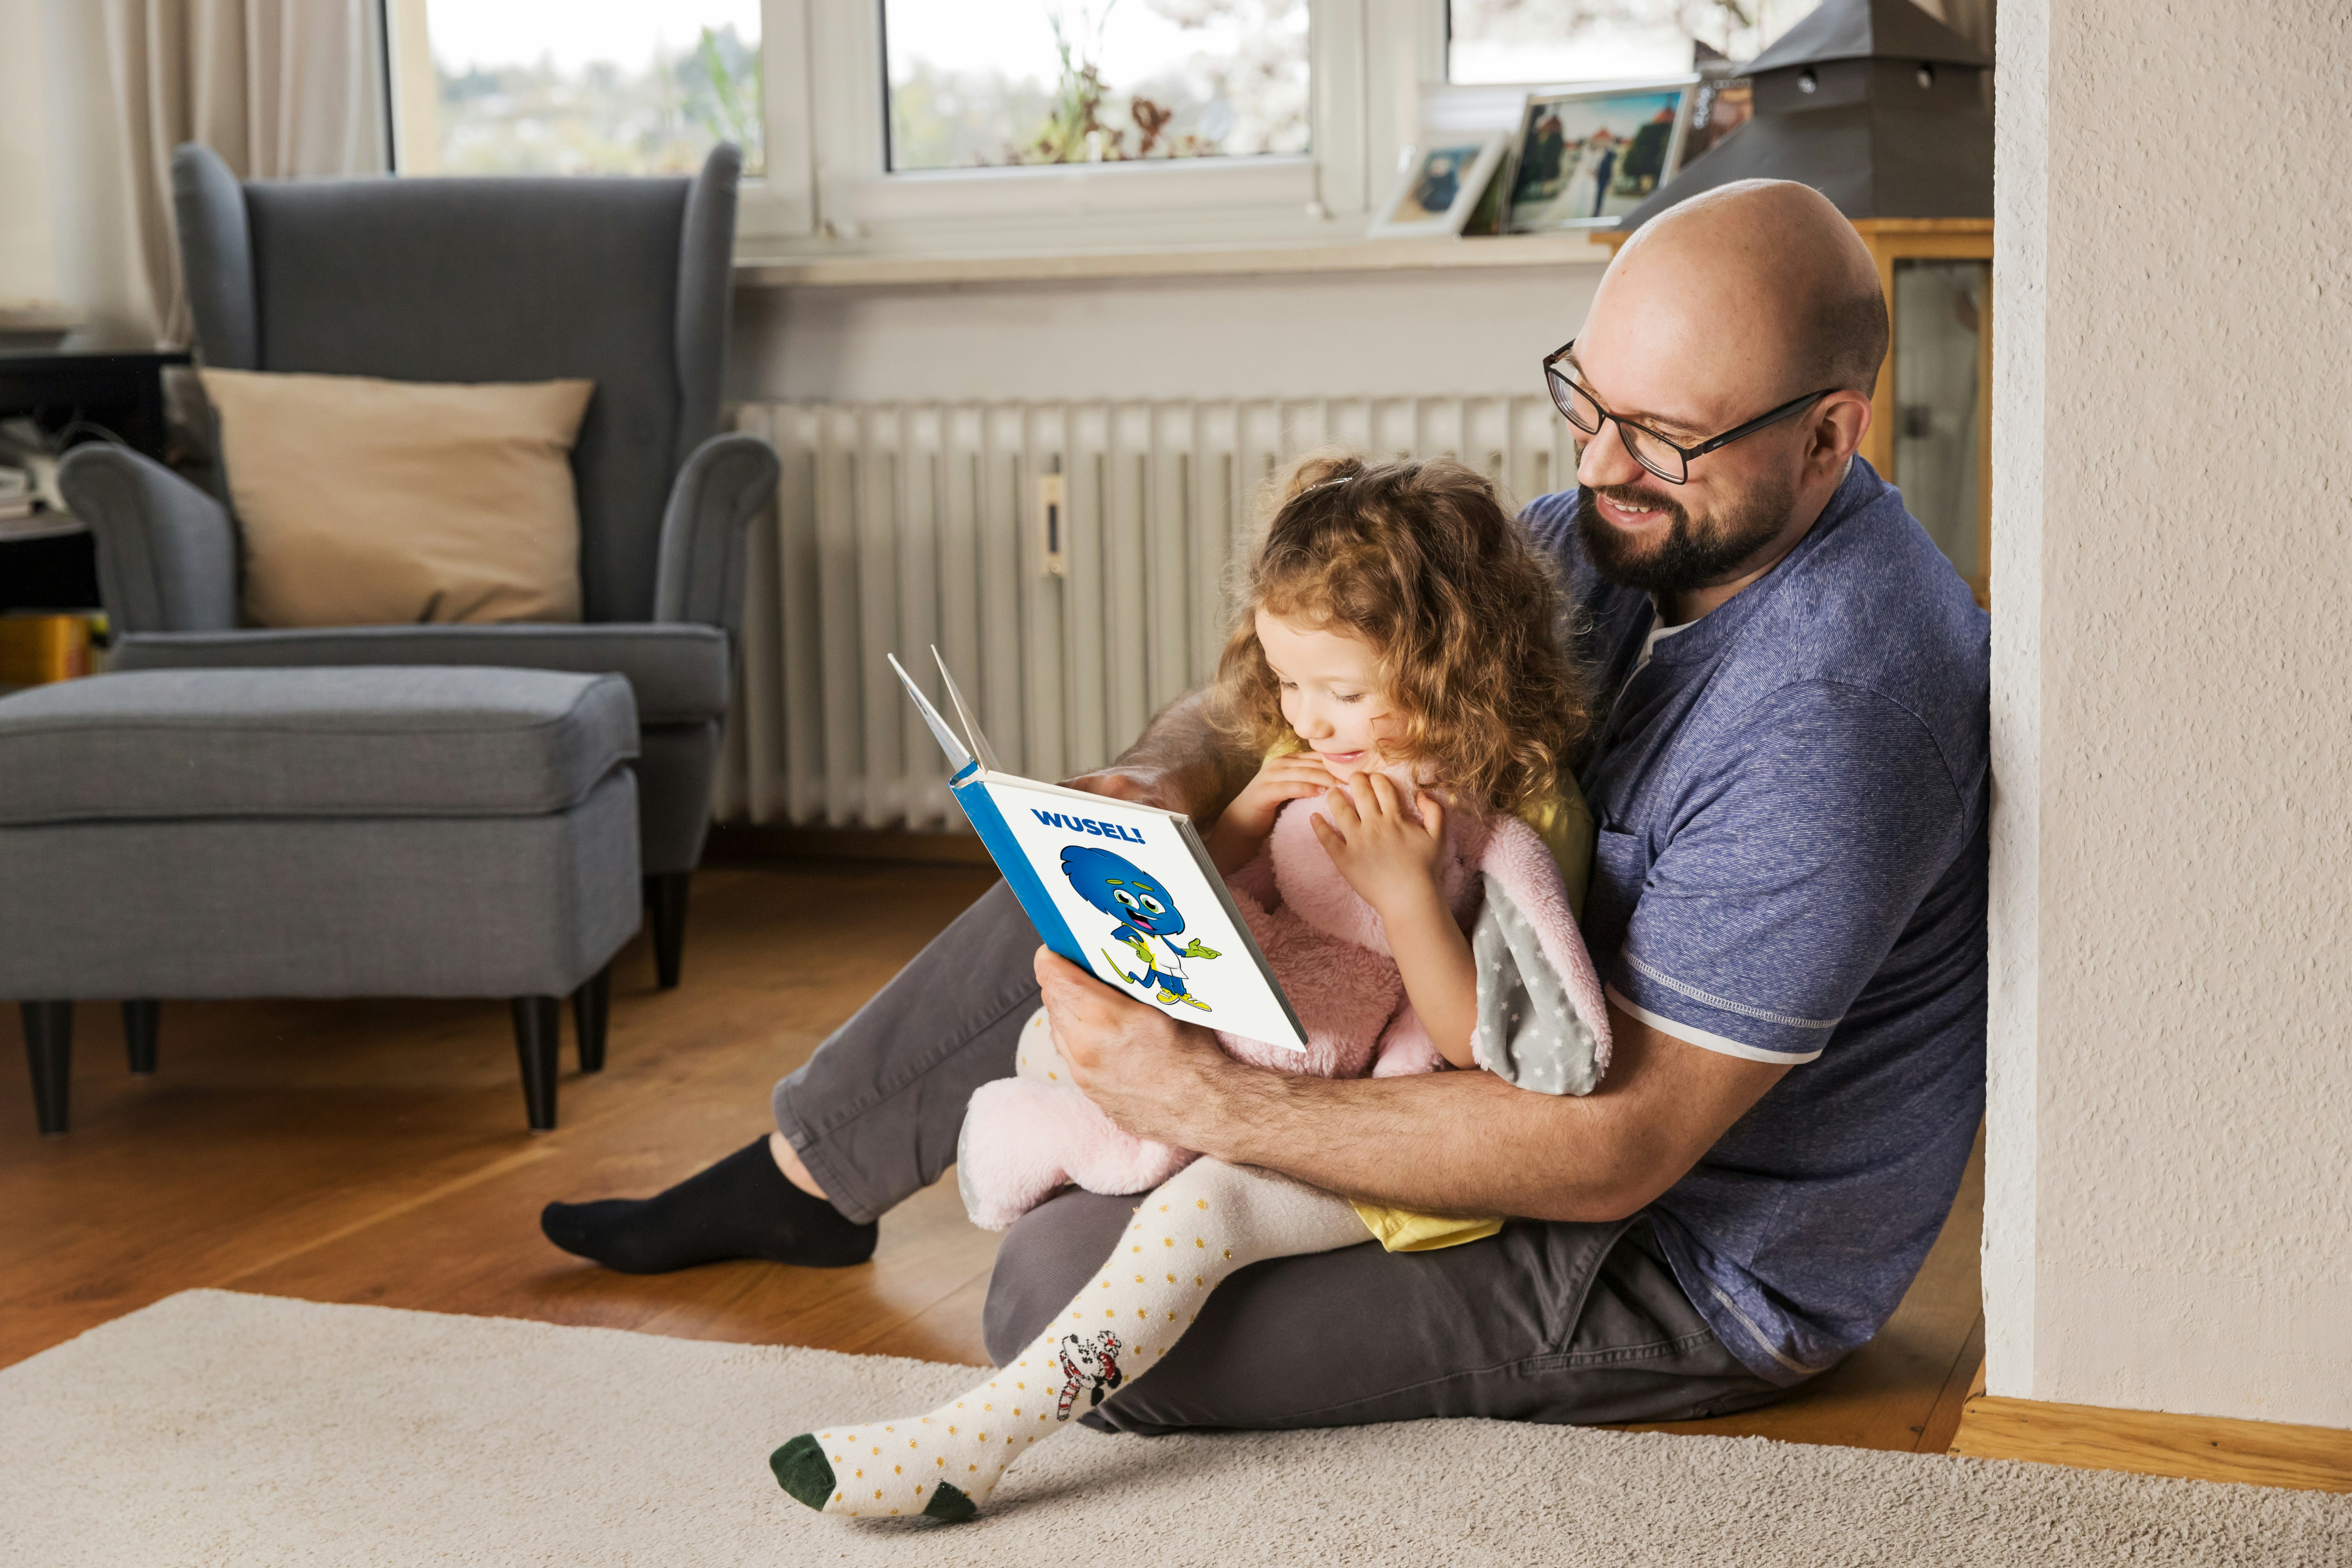 Vater und Tochter, sitzen lachend auf dem Boden und lesen in einem Kinderbuch vor einer Heizung